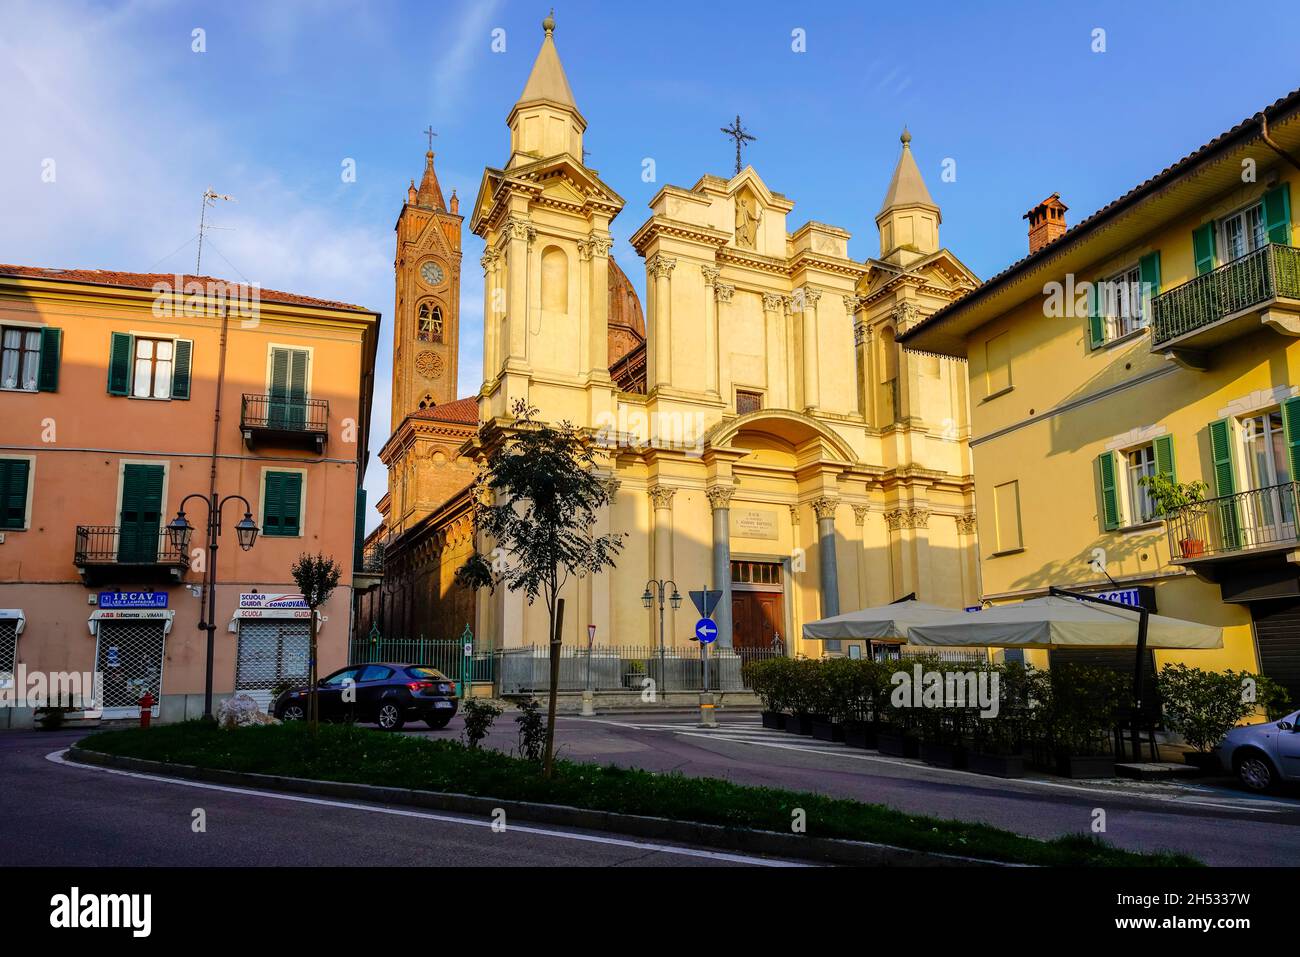 Vedi la chiesa parrocchiale di San Giovanni Battista nel centro storico di Bra, provincia di Cuneo, regione Piemonte, Italia settentrionale. Foto Stock